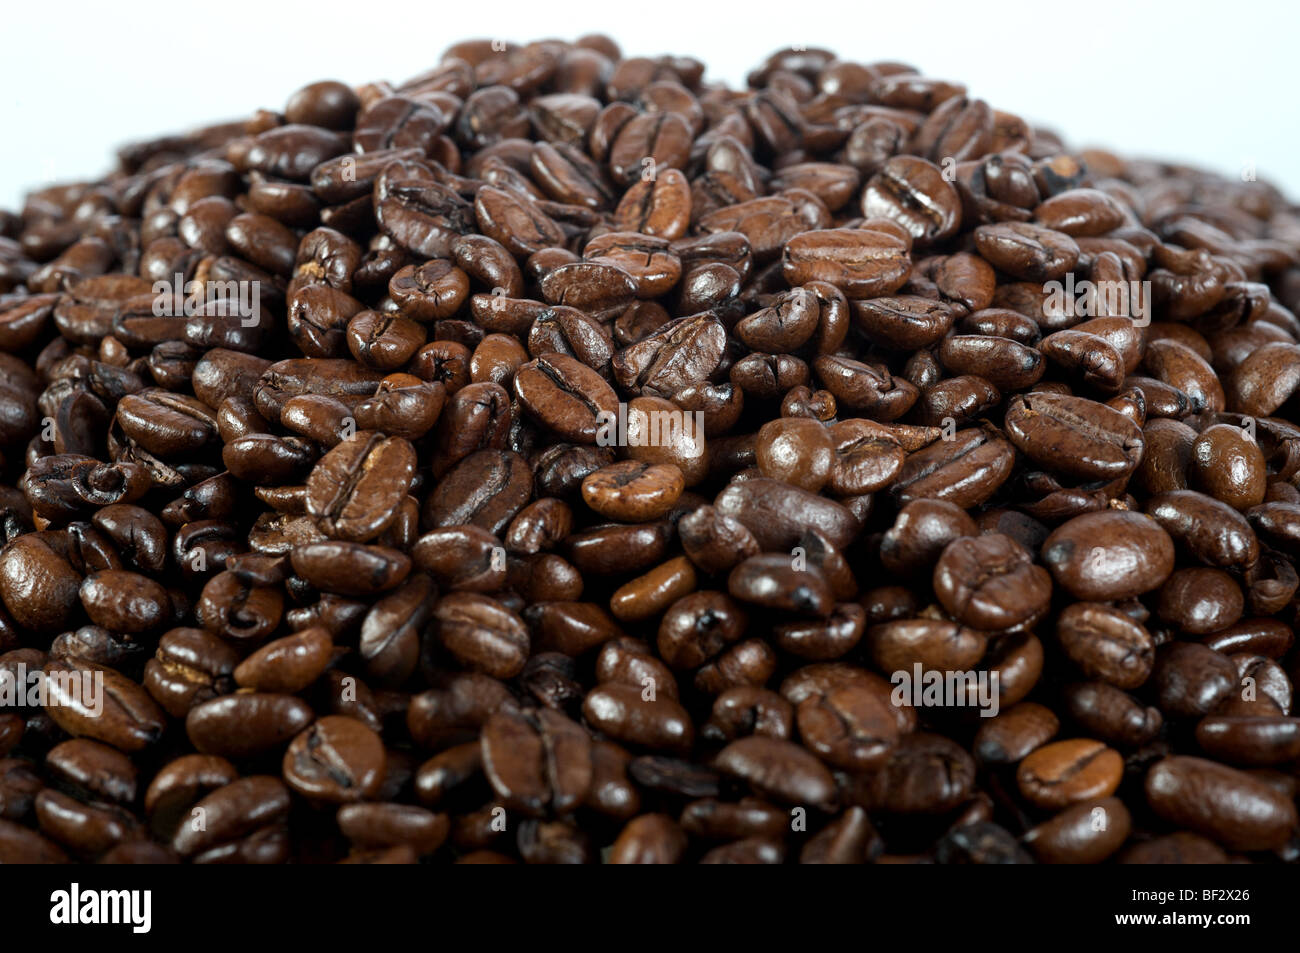 Roasted coffee beans (Guatemala Elephant Stock Photo - Alamy